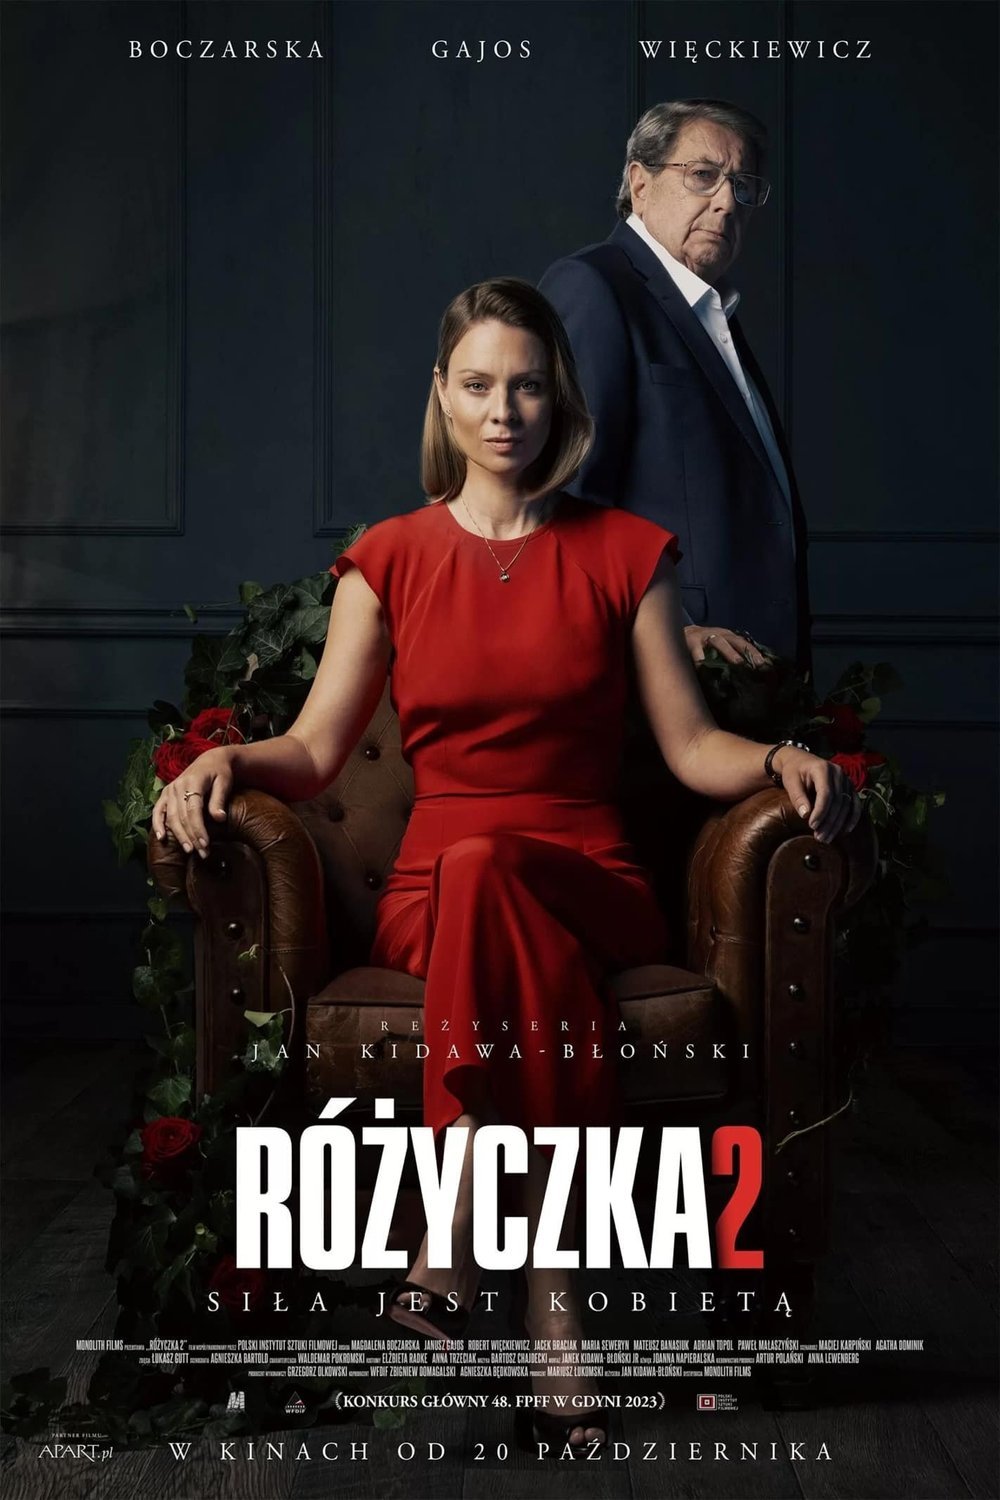 L'affiche originale du film Rózyczka 2 en polonais